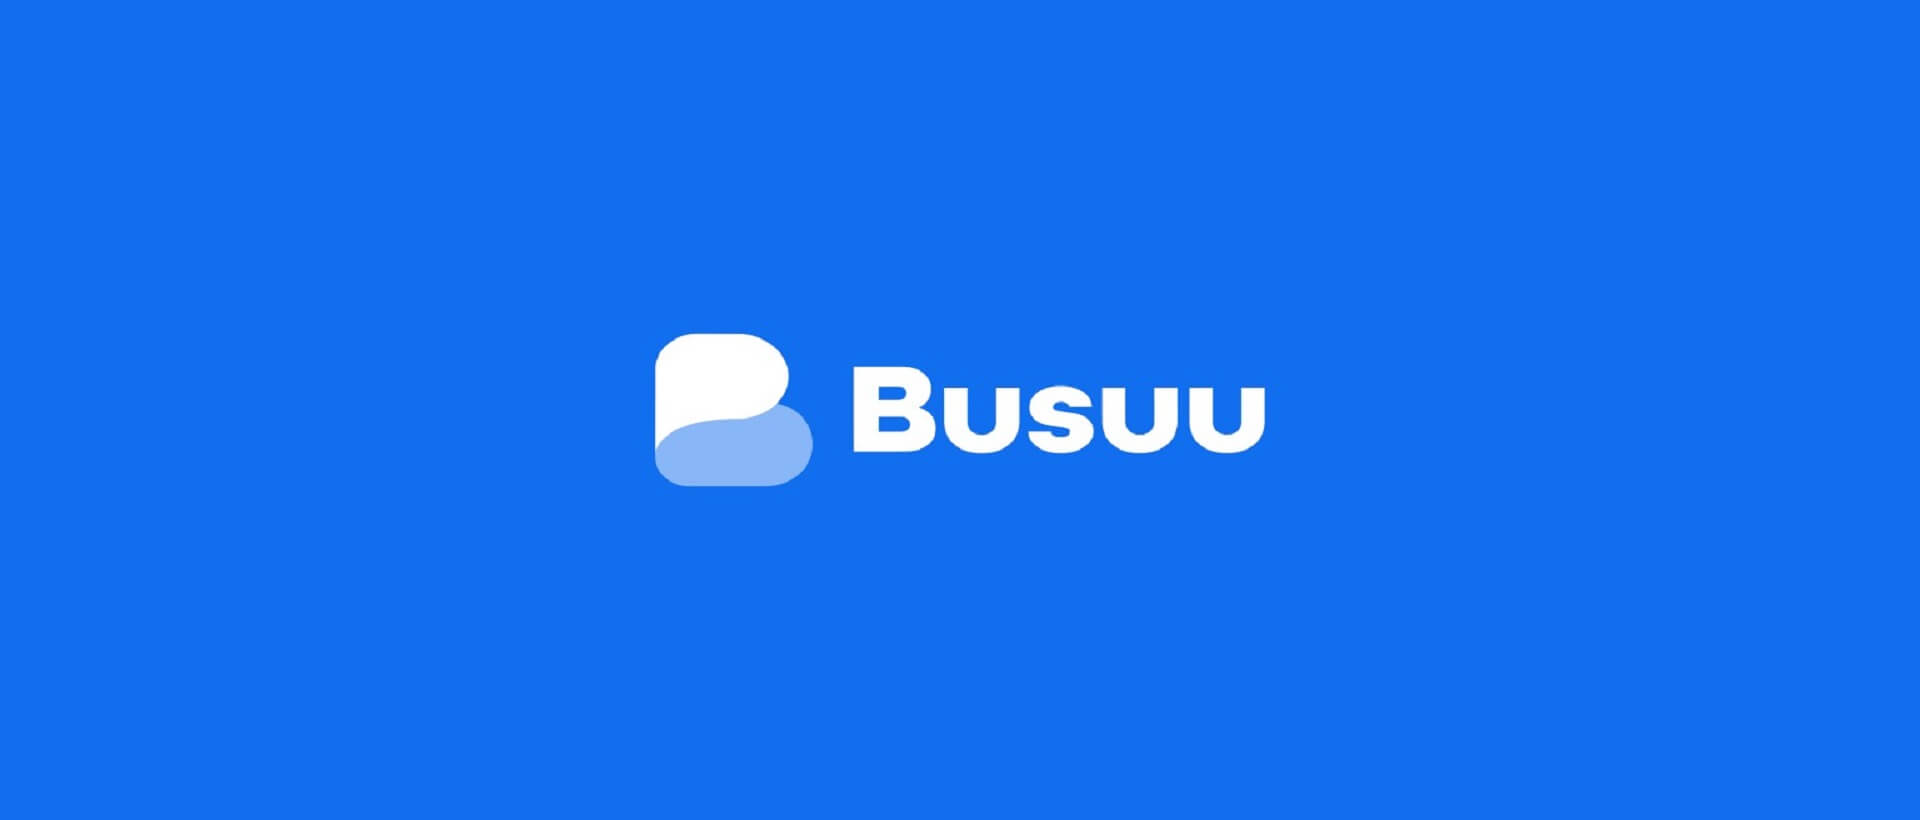 منصة Busuu كيف اتعلم اللغة الانجليزية بسرعة